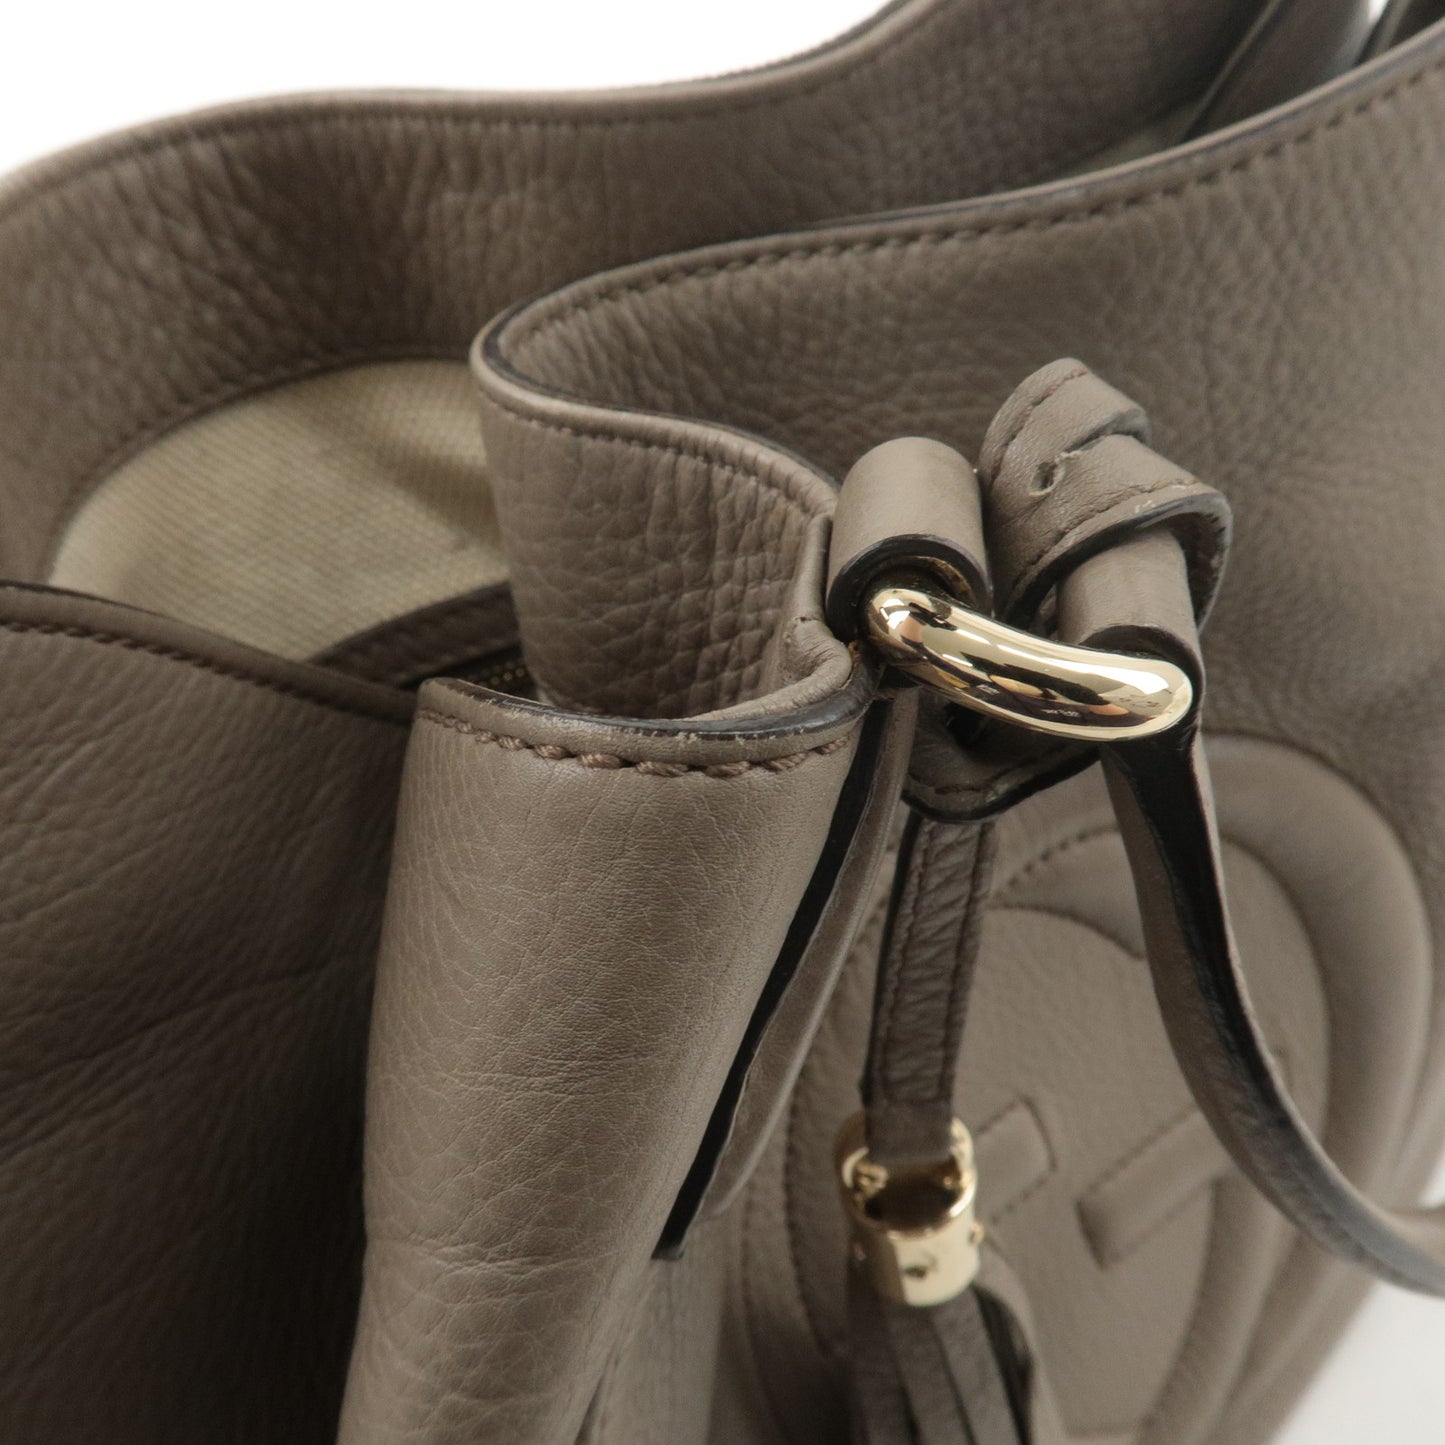 GUCCI SOHO Interlocking G Leather Shoulder Bag Graige 282309